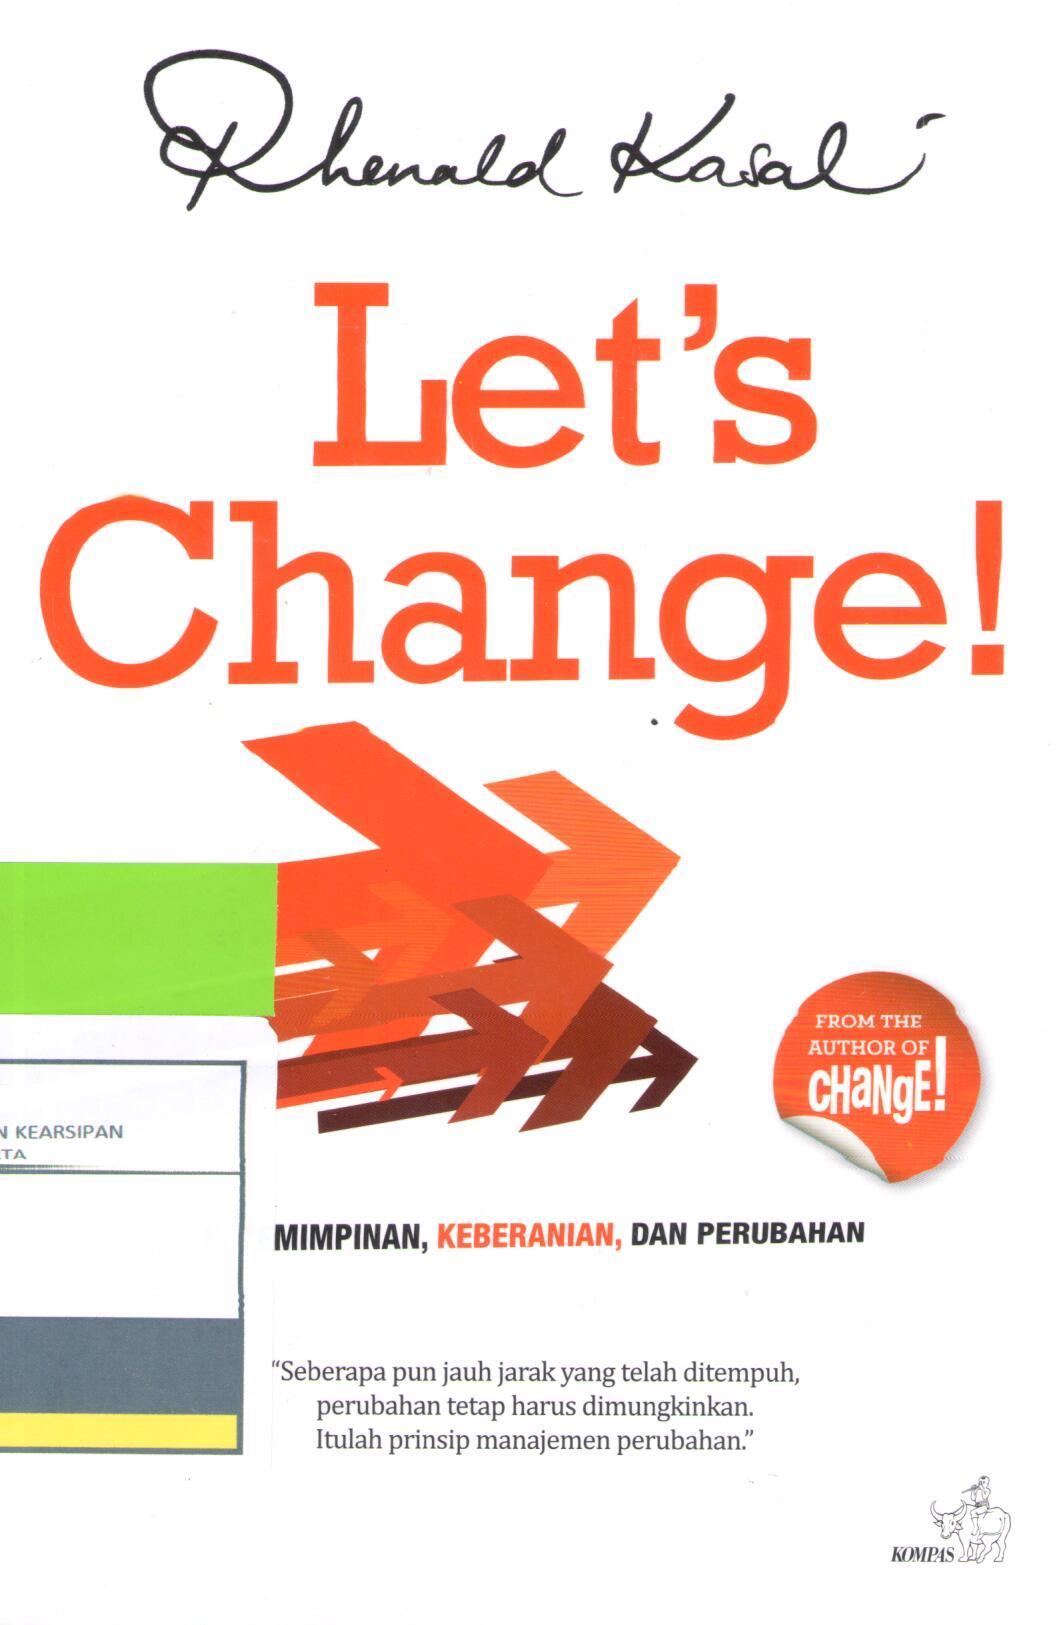 Let's change! :  Kepemimpinan, keberanian dan perubahan